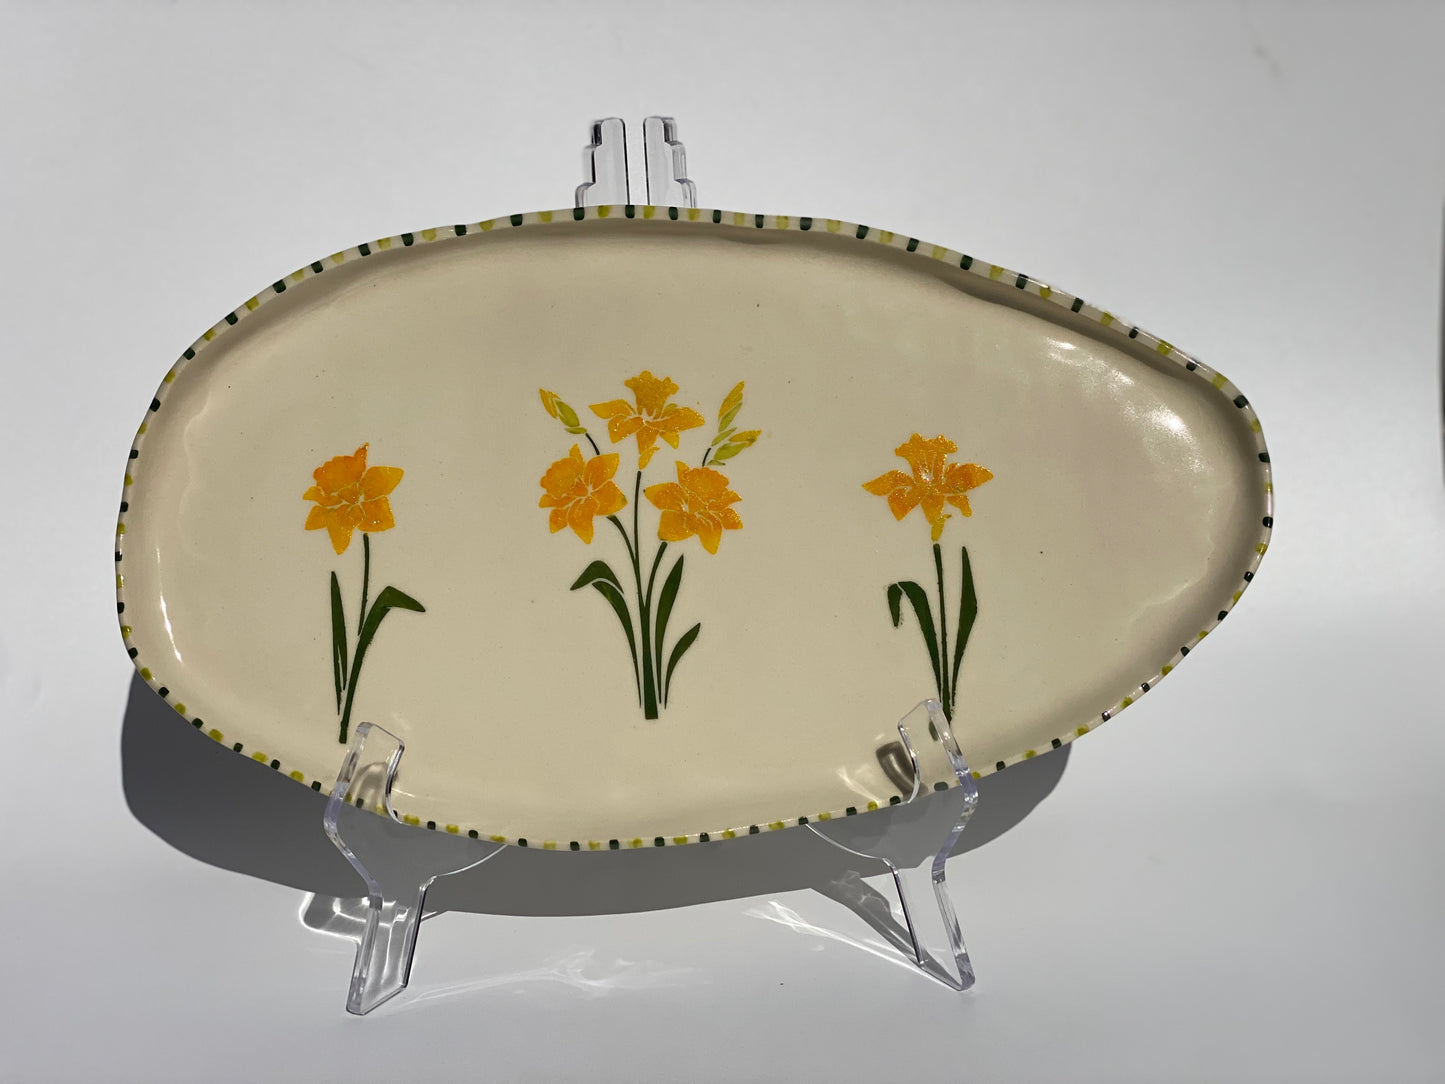 Daffodil Cheese Plate